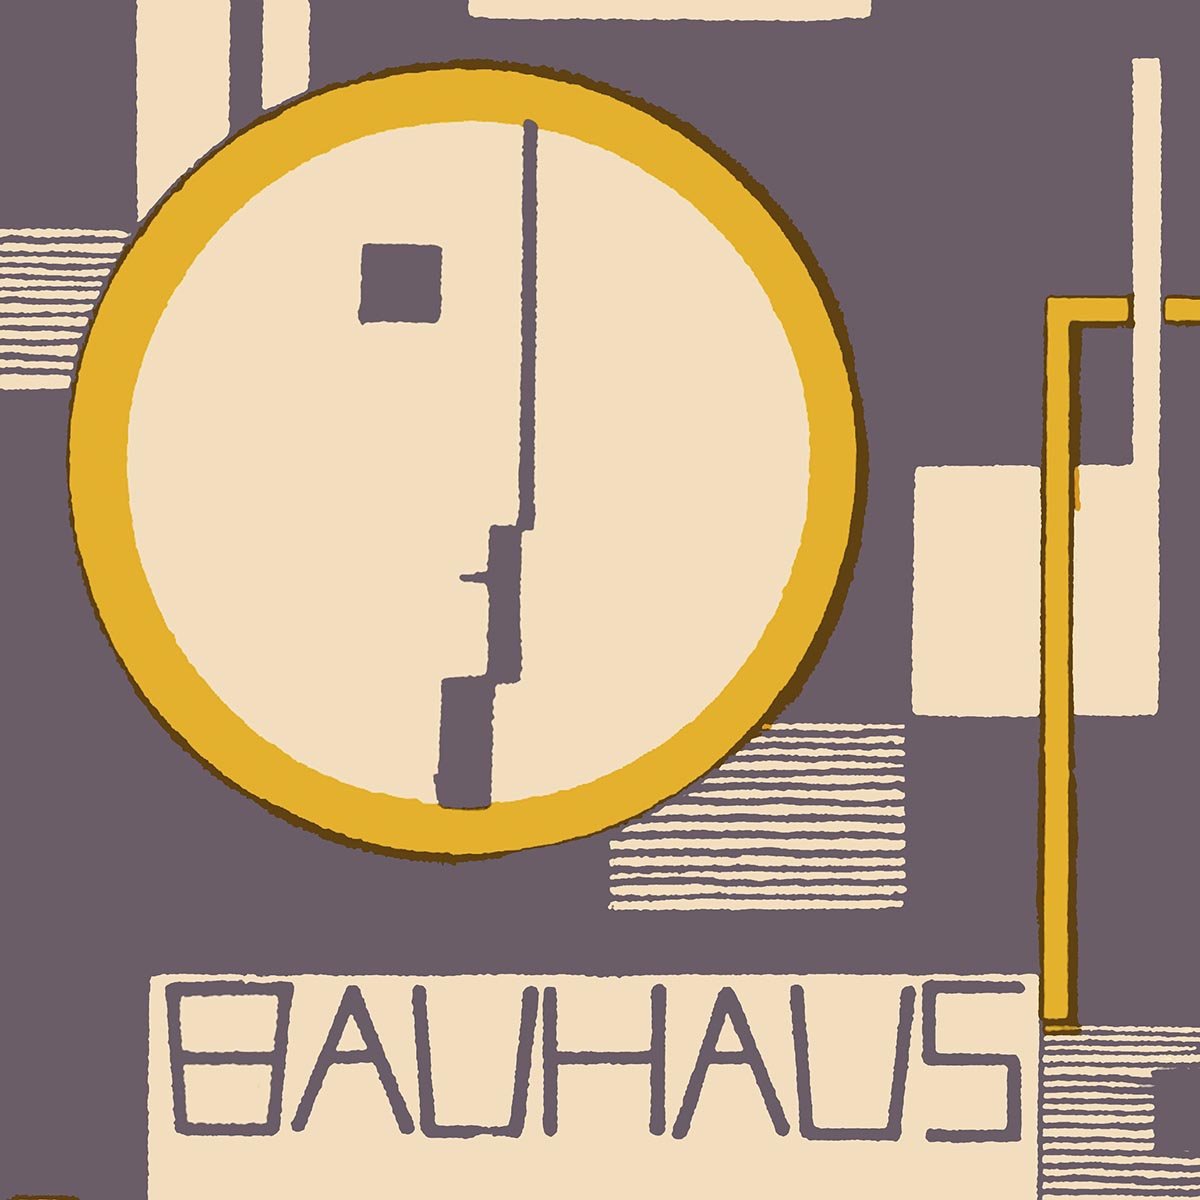 Bauhaus Ausstellung Weimar 1923 by Rudolf Baschant